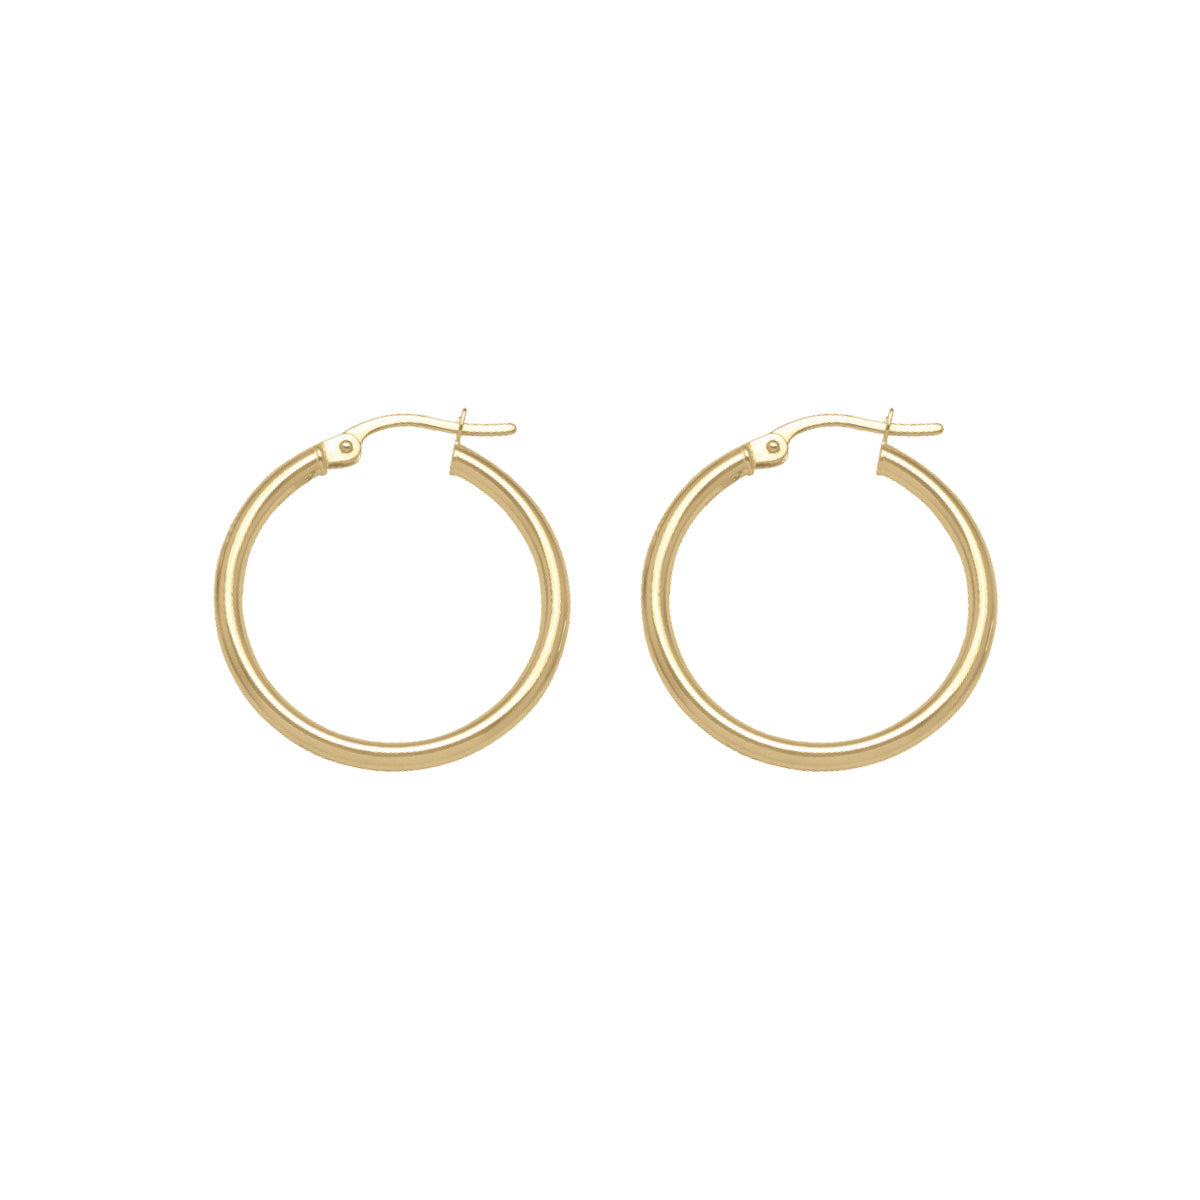 EH0101,  Gold Earrings, Hoops, 2 mm Tubing